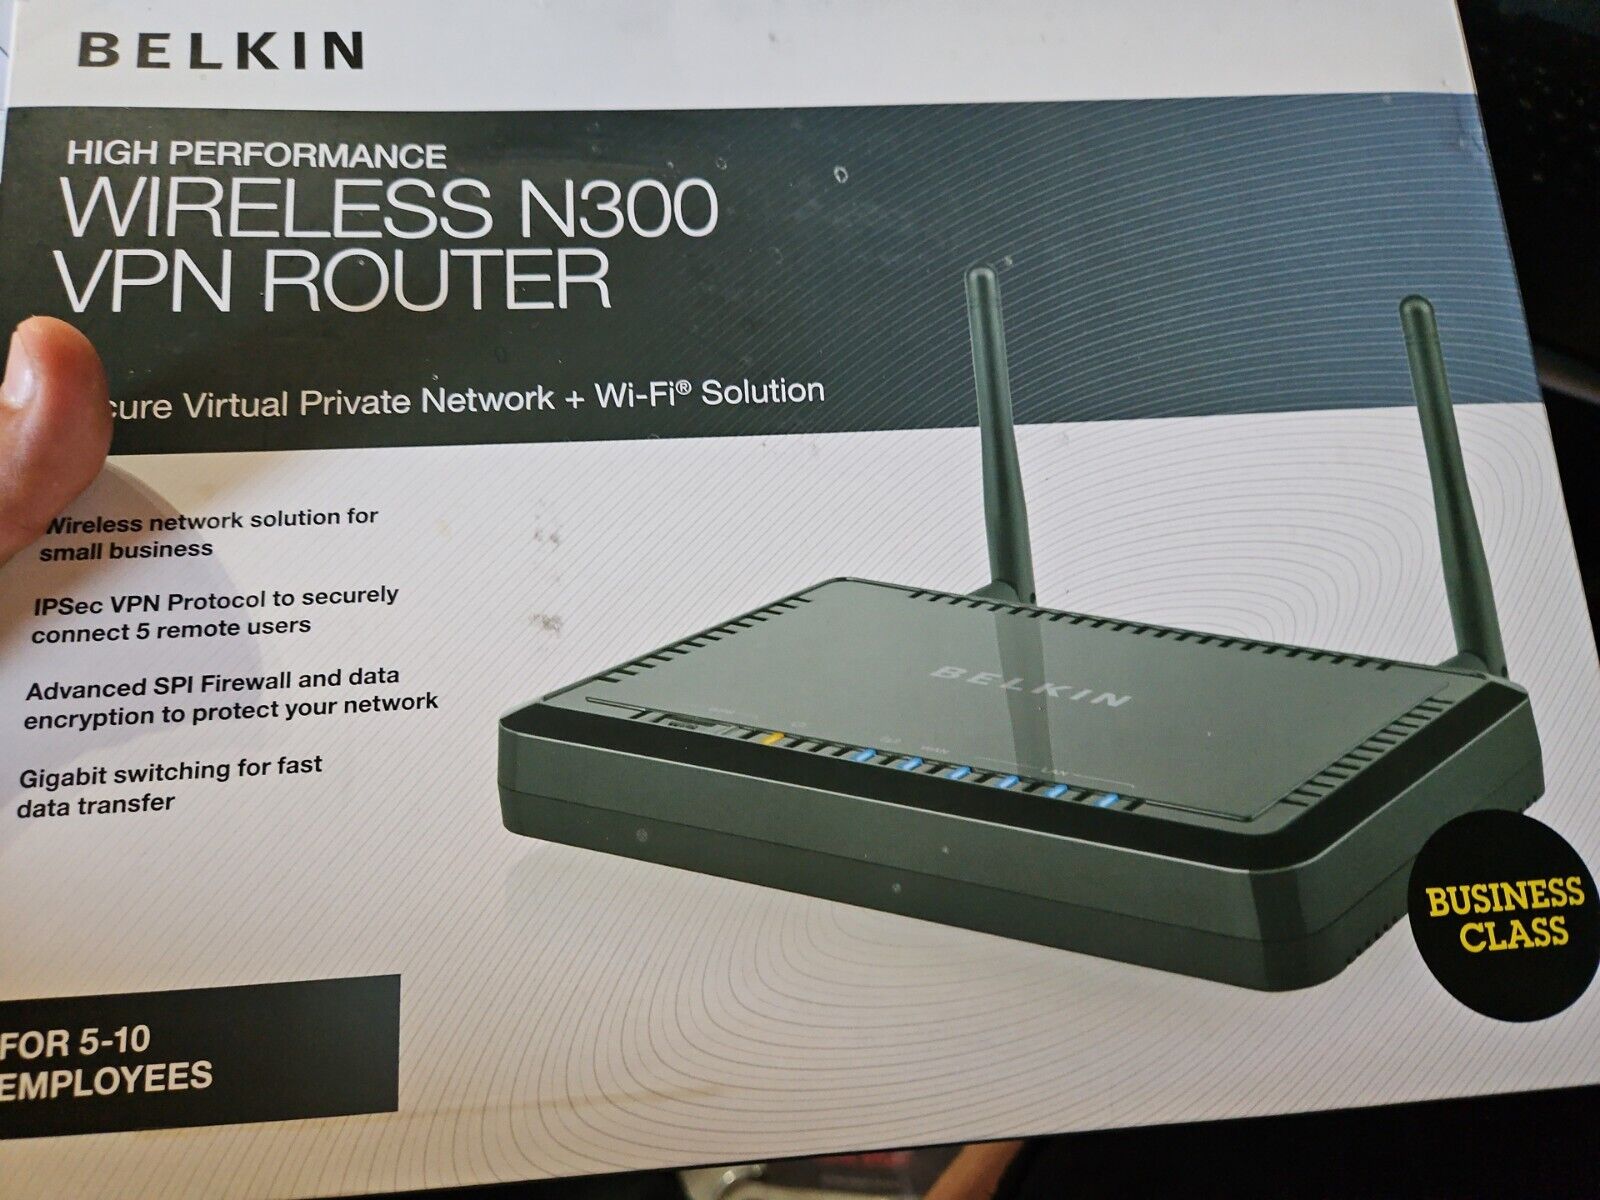 Brand New Belkin F9K1004 High Performance Wireless N300 VPN Router